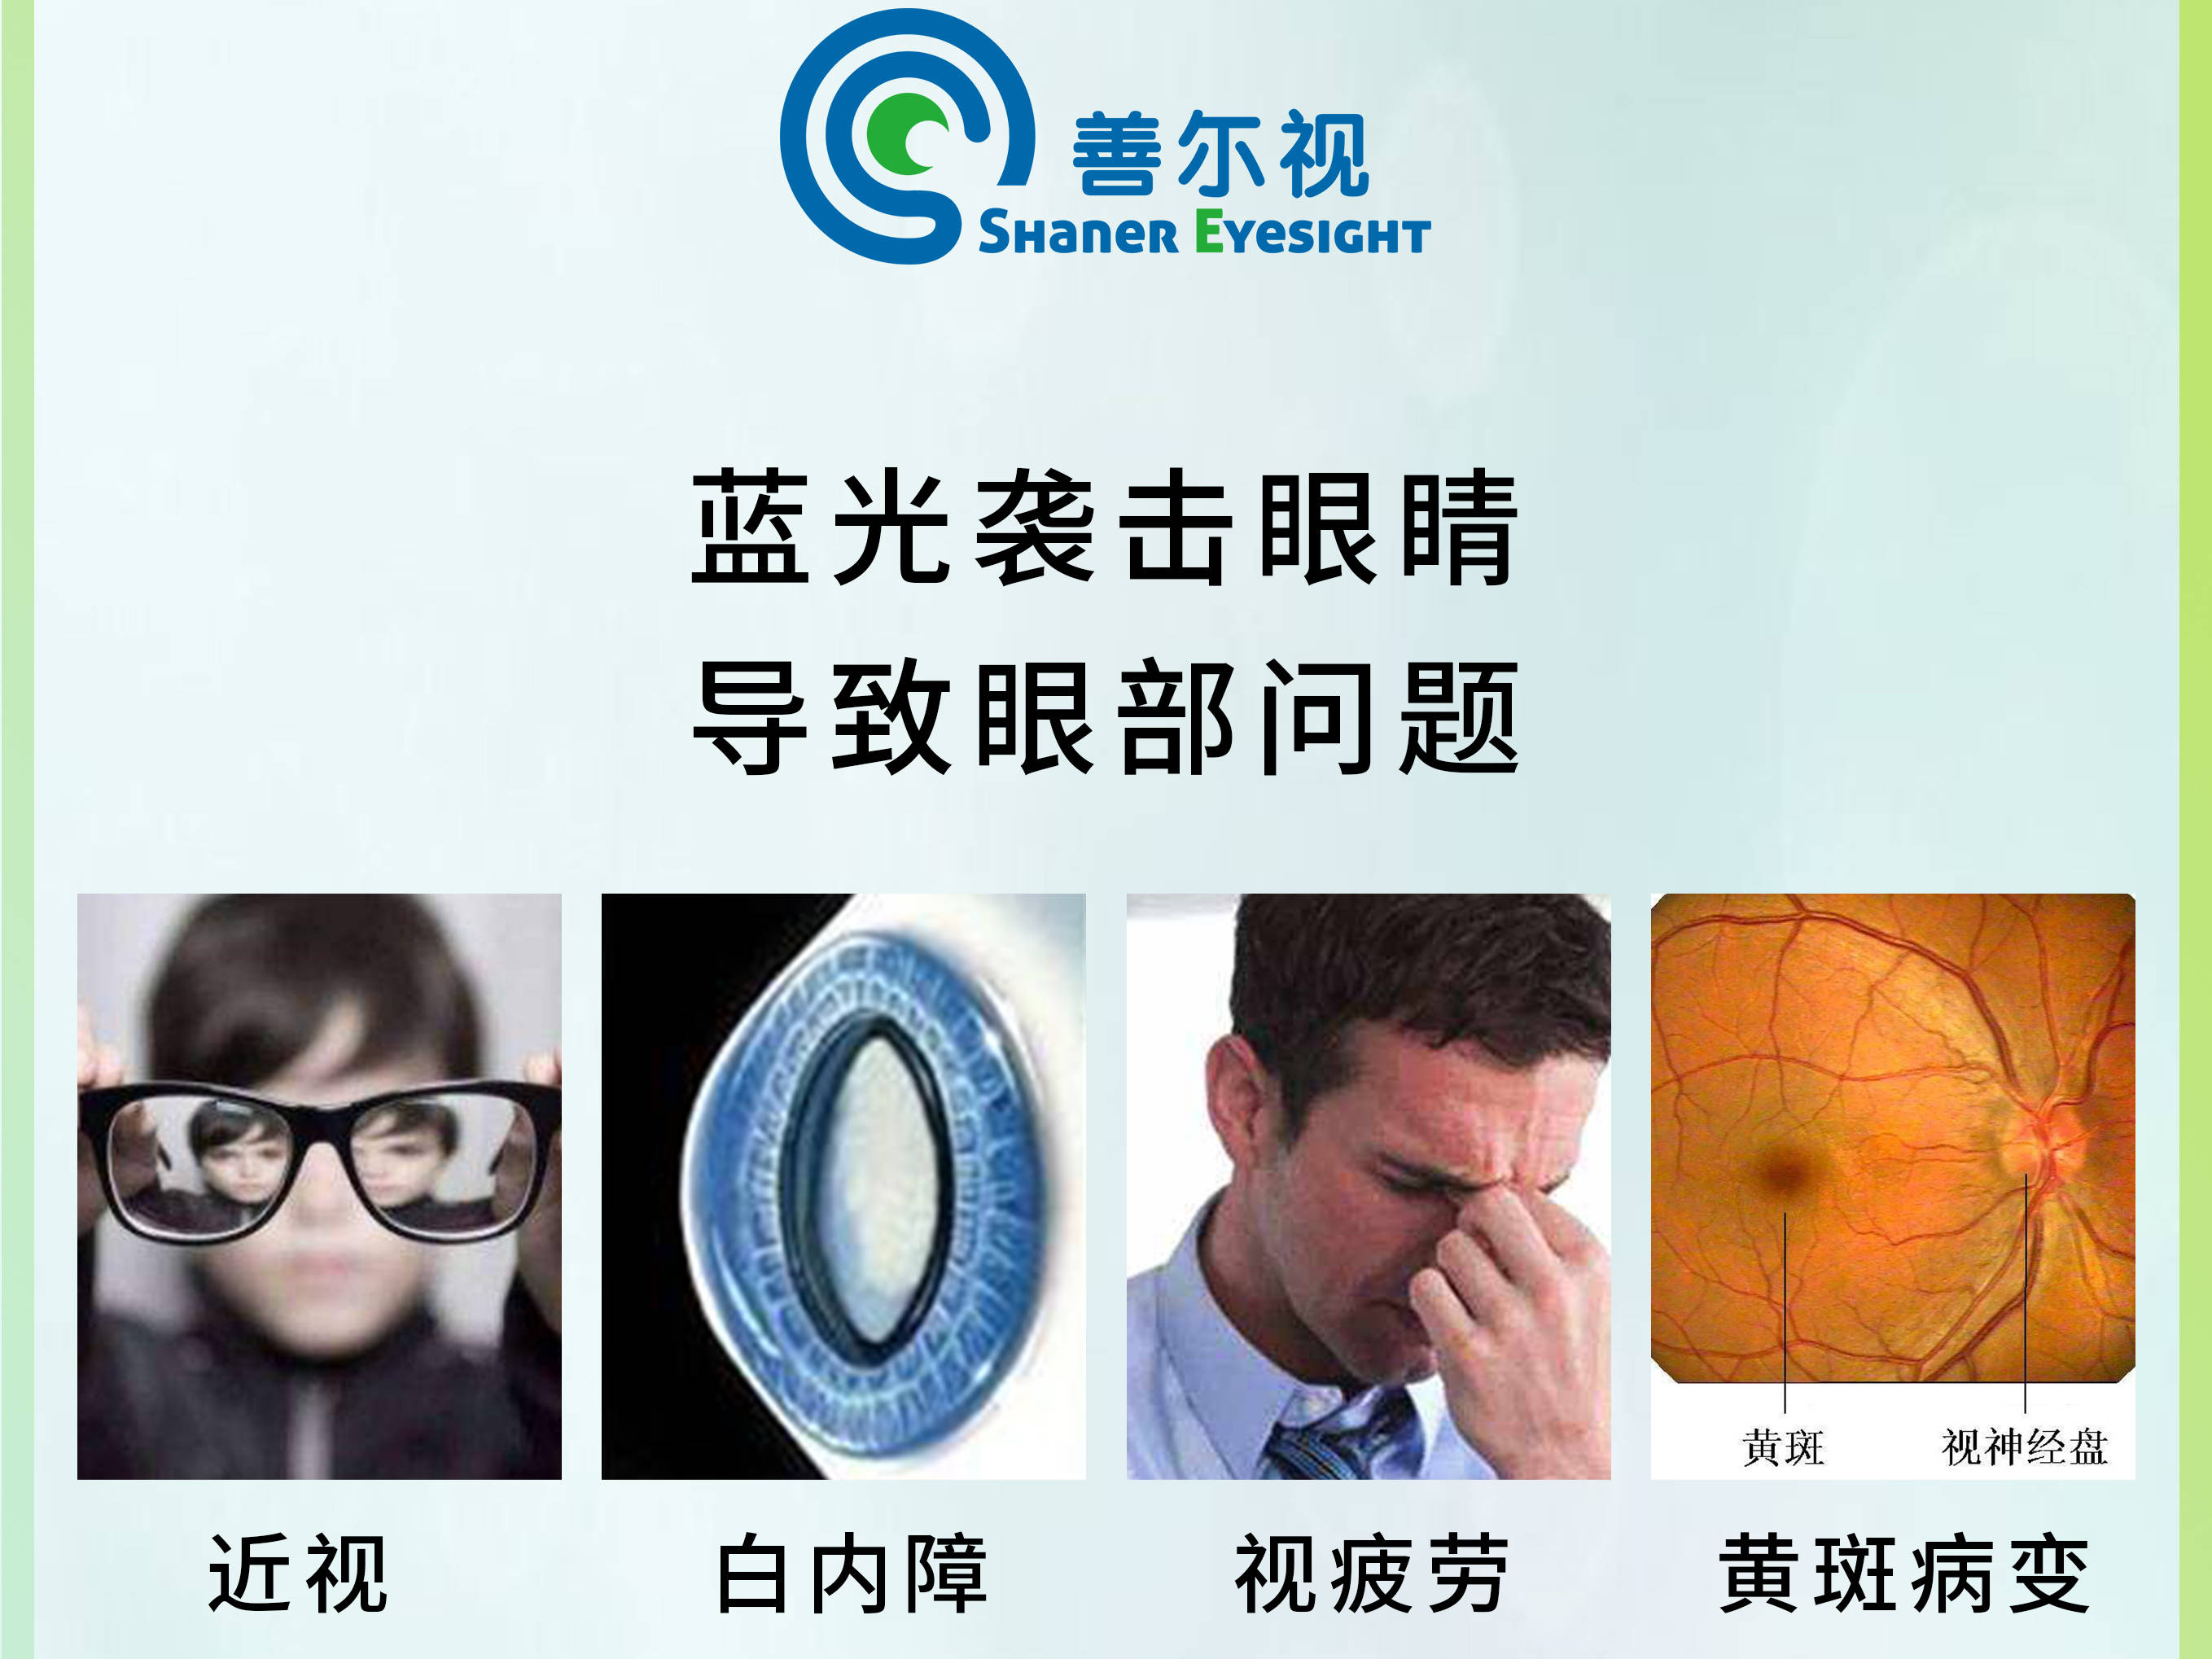 手机蓝光伤害眼睛 引起眼部视疲劳 导致黄斑病变,导致白内障